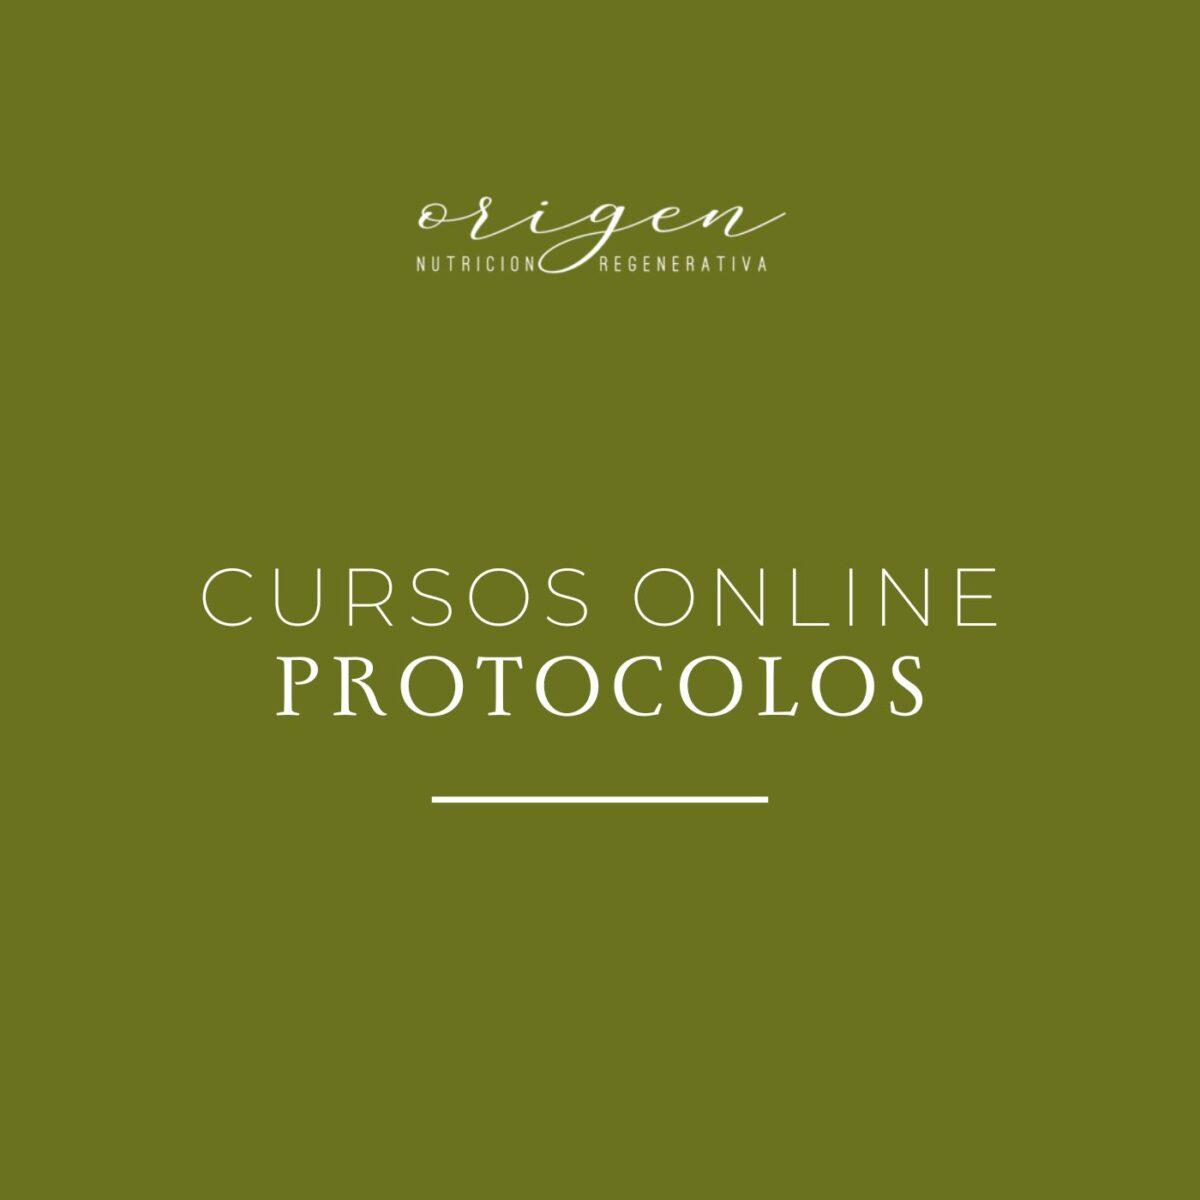 Cursos online y protocolos